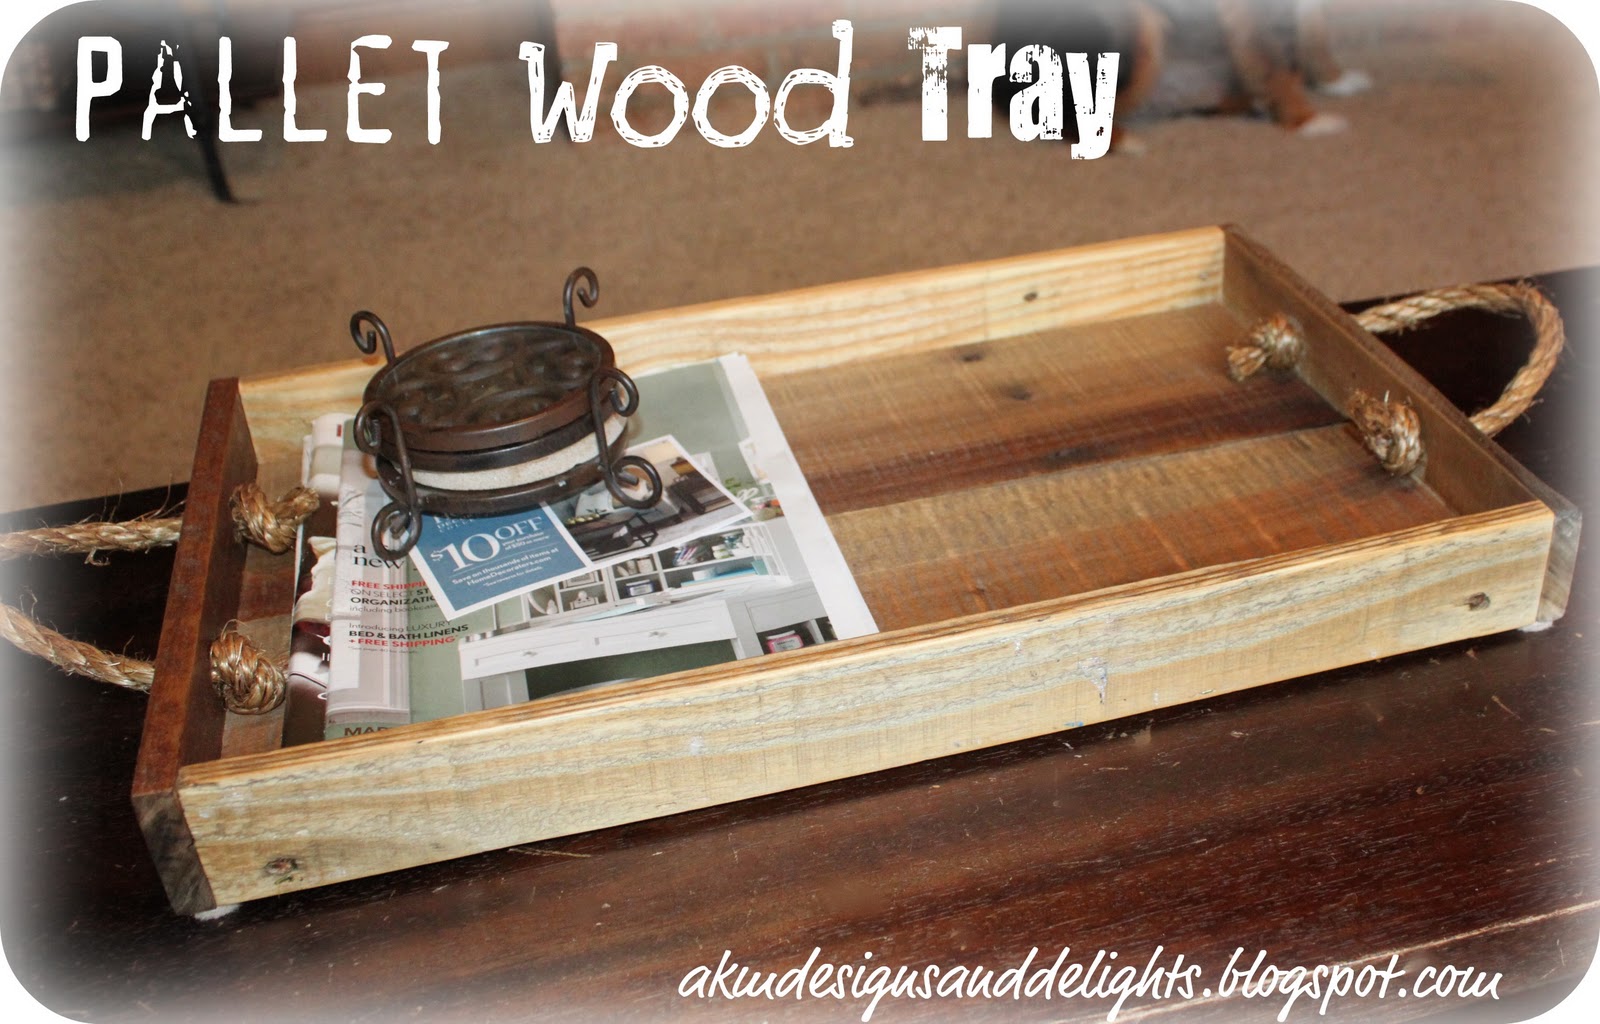 DIY Wood Pallet